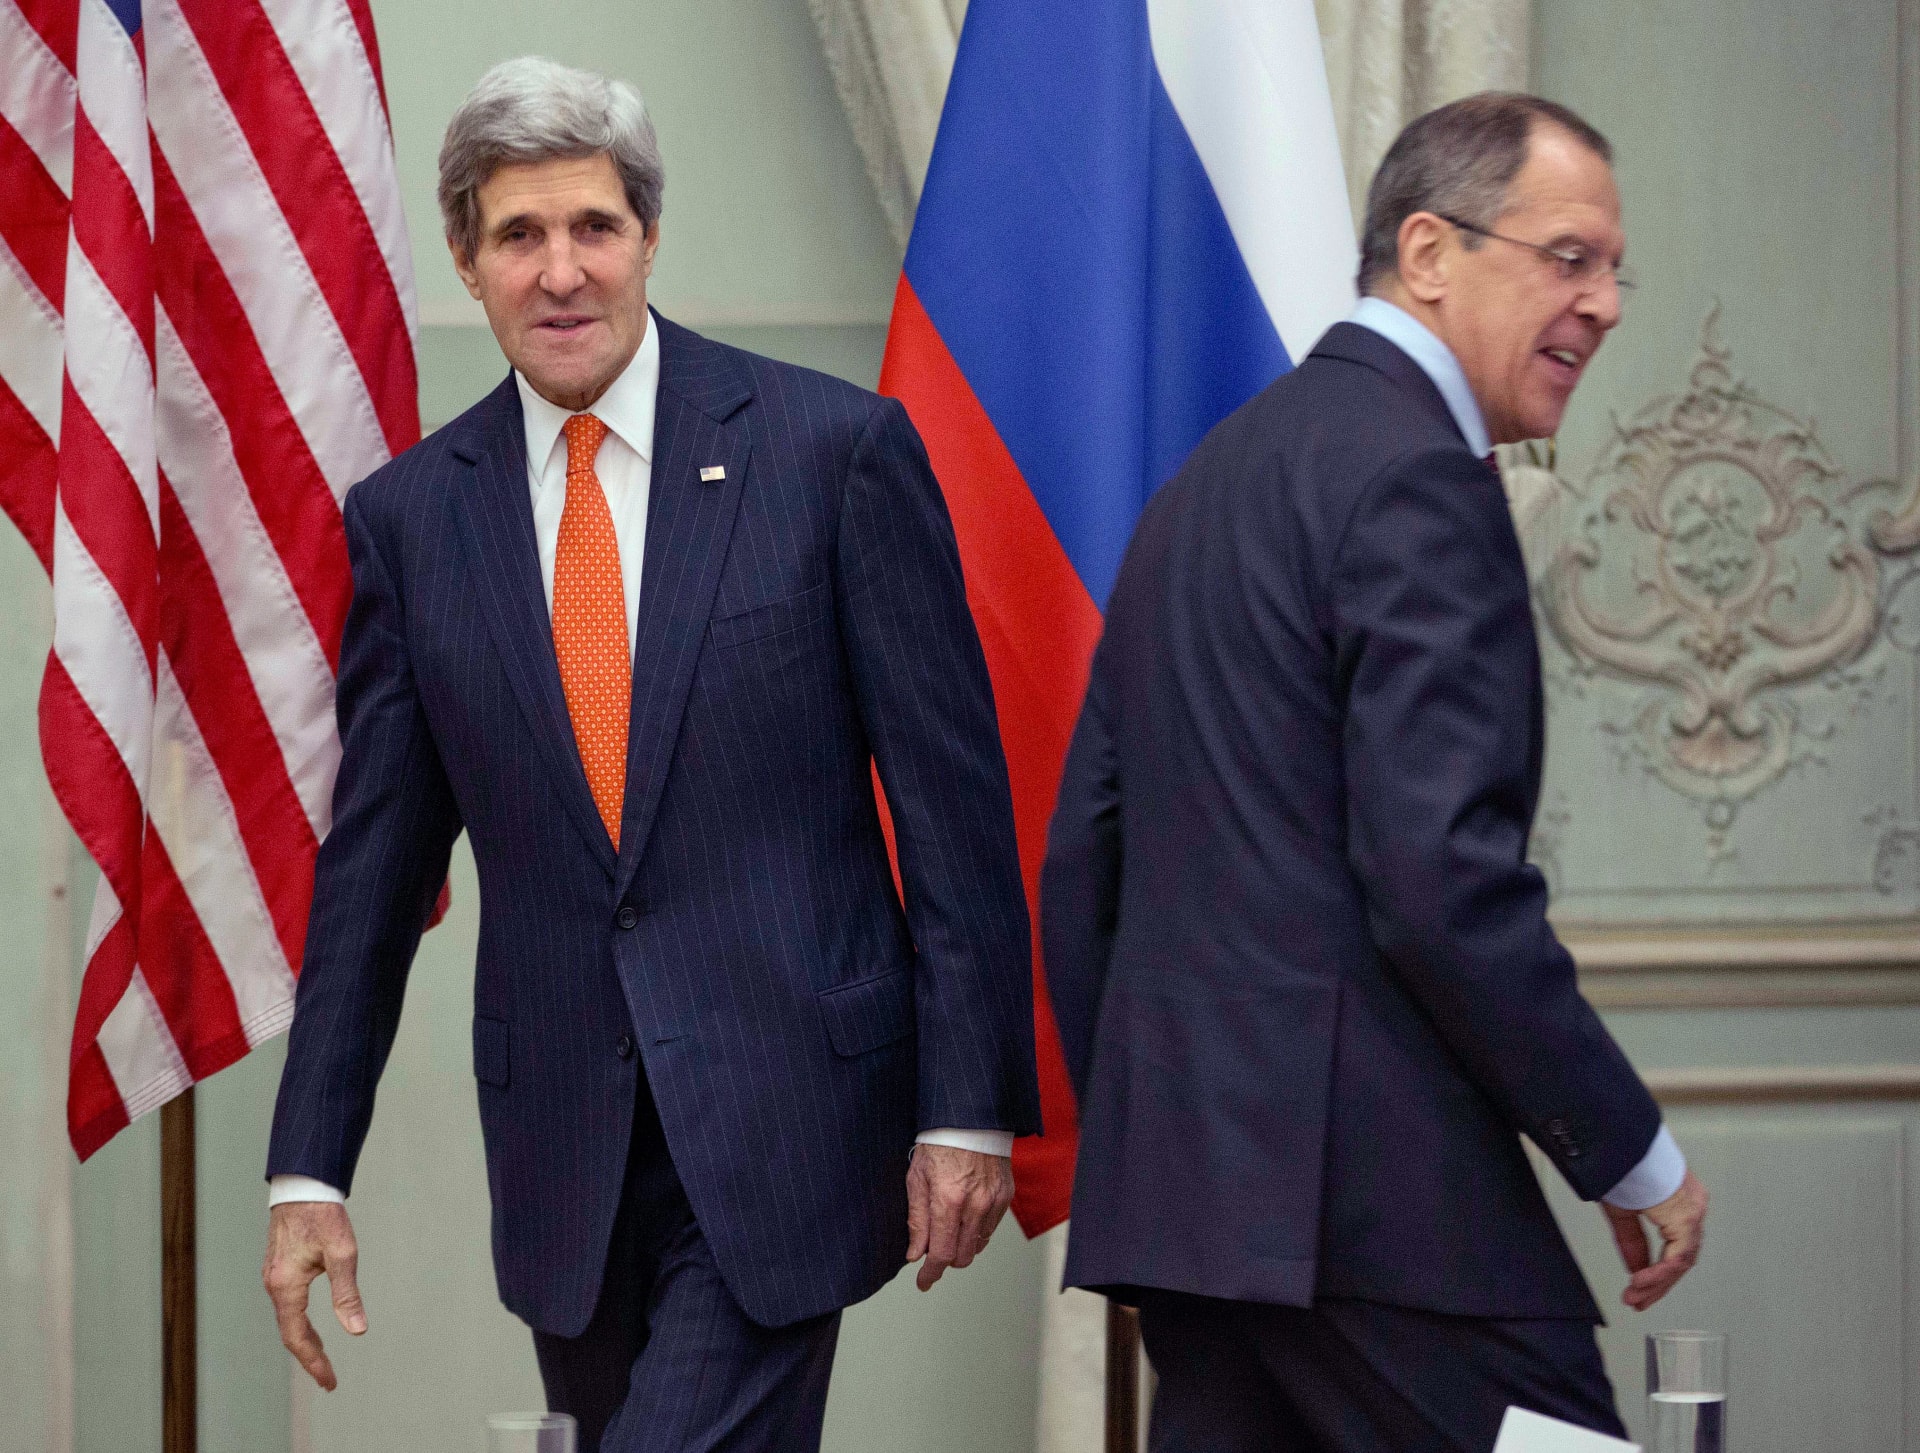 موسكو تصفع 5 مسؤولين أمريكيين بعقوبات ردا على إضافة الخزينة الأمريكية 5 روس إلى قائمة المحظور دخولهم أمريكا